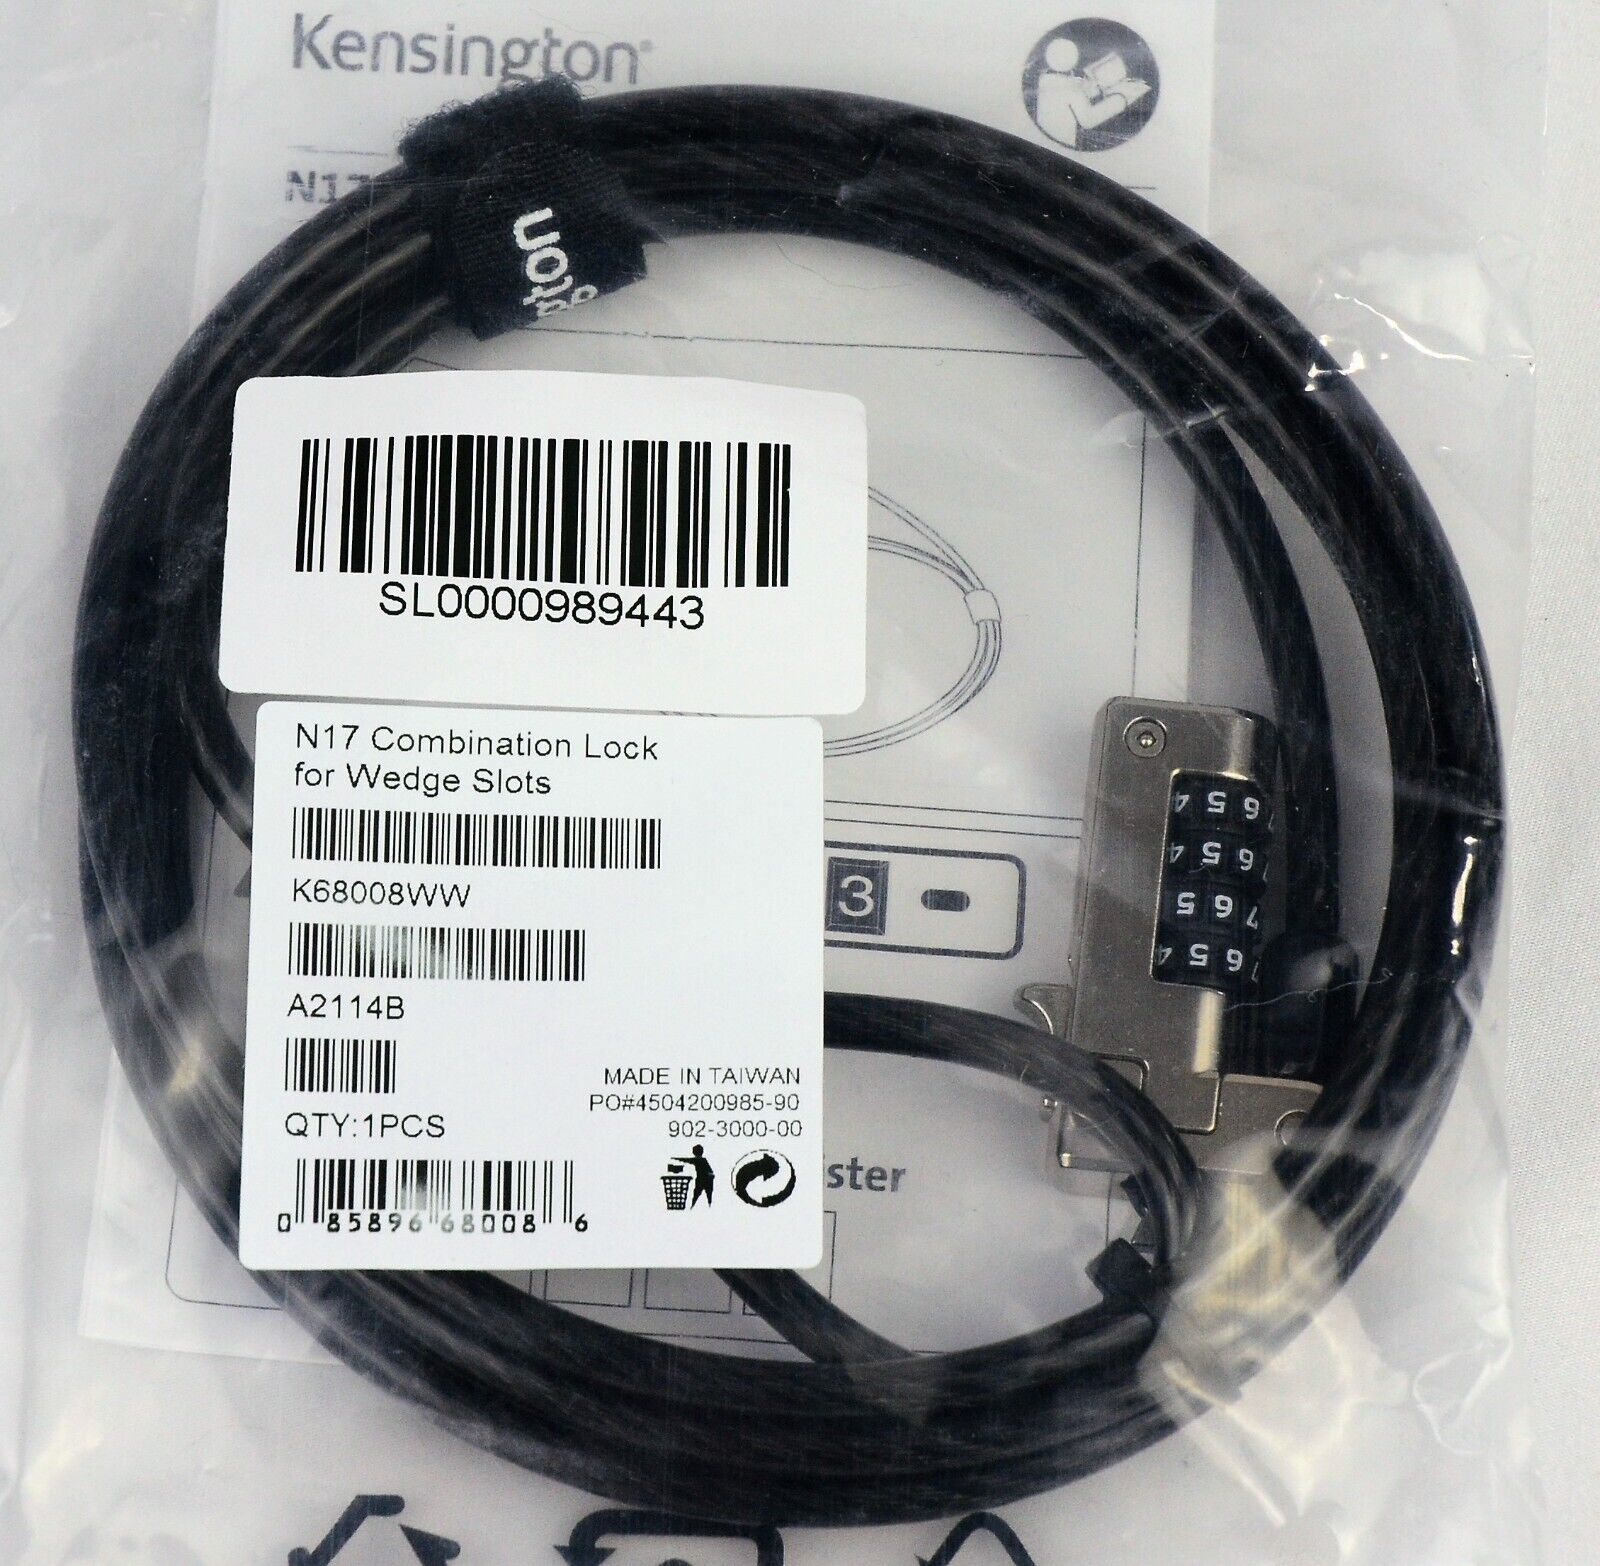 Kensington N17 Dell Laptop Lock - Combination K68008WW - Black